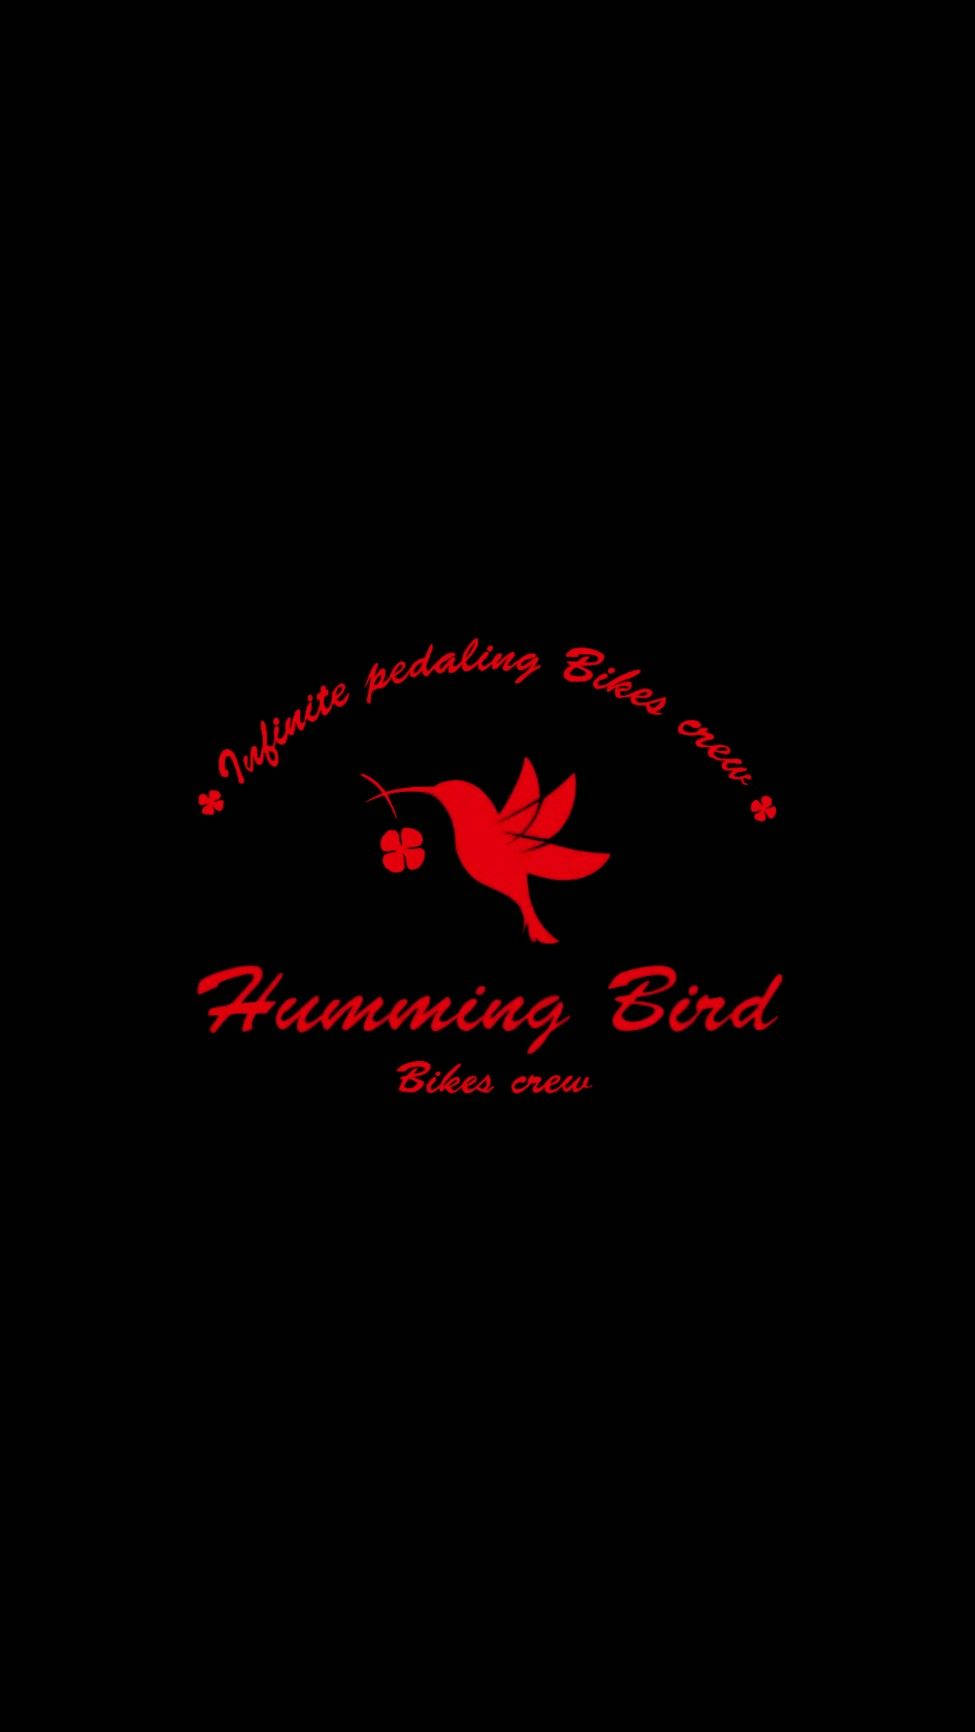 Wind Breaker Humming Bird Logo Wallpaper